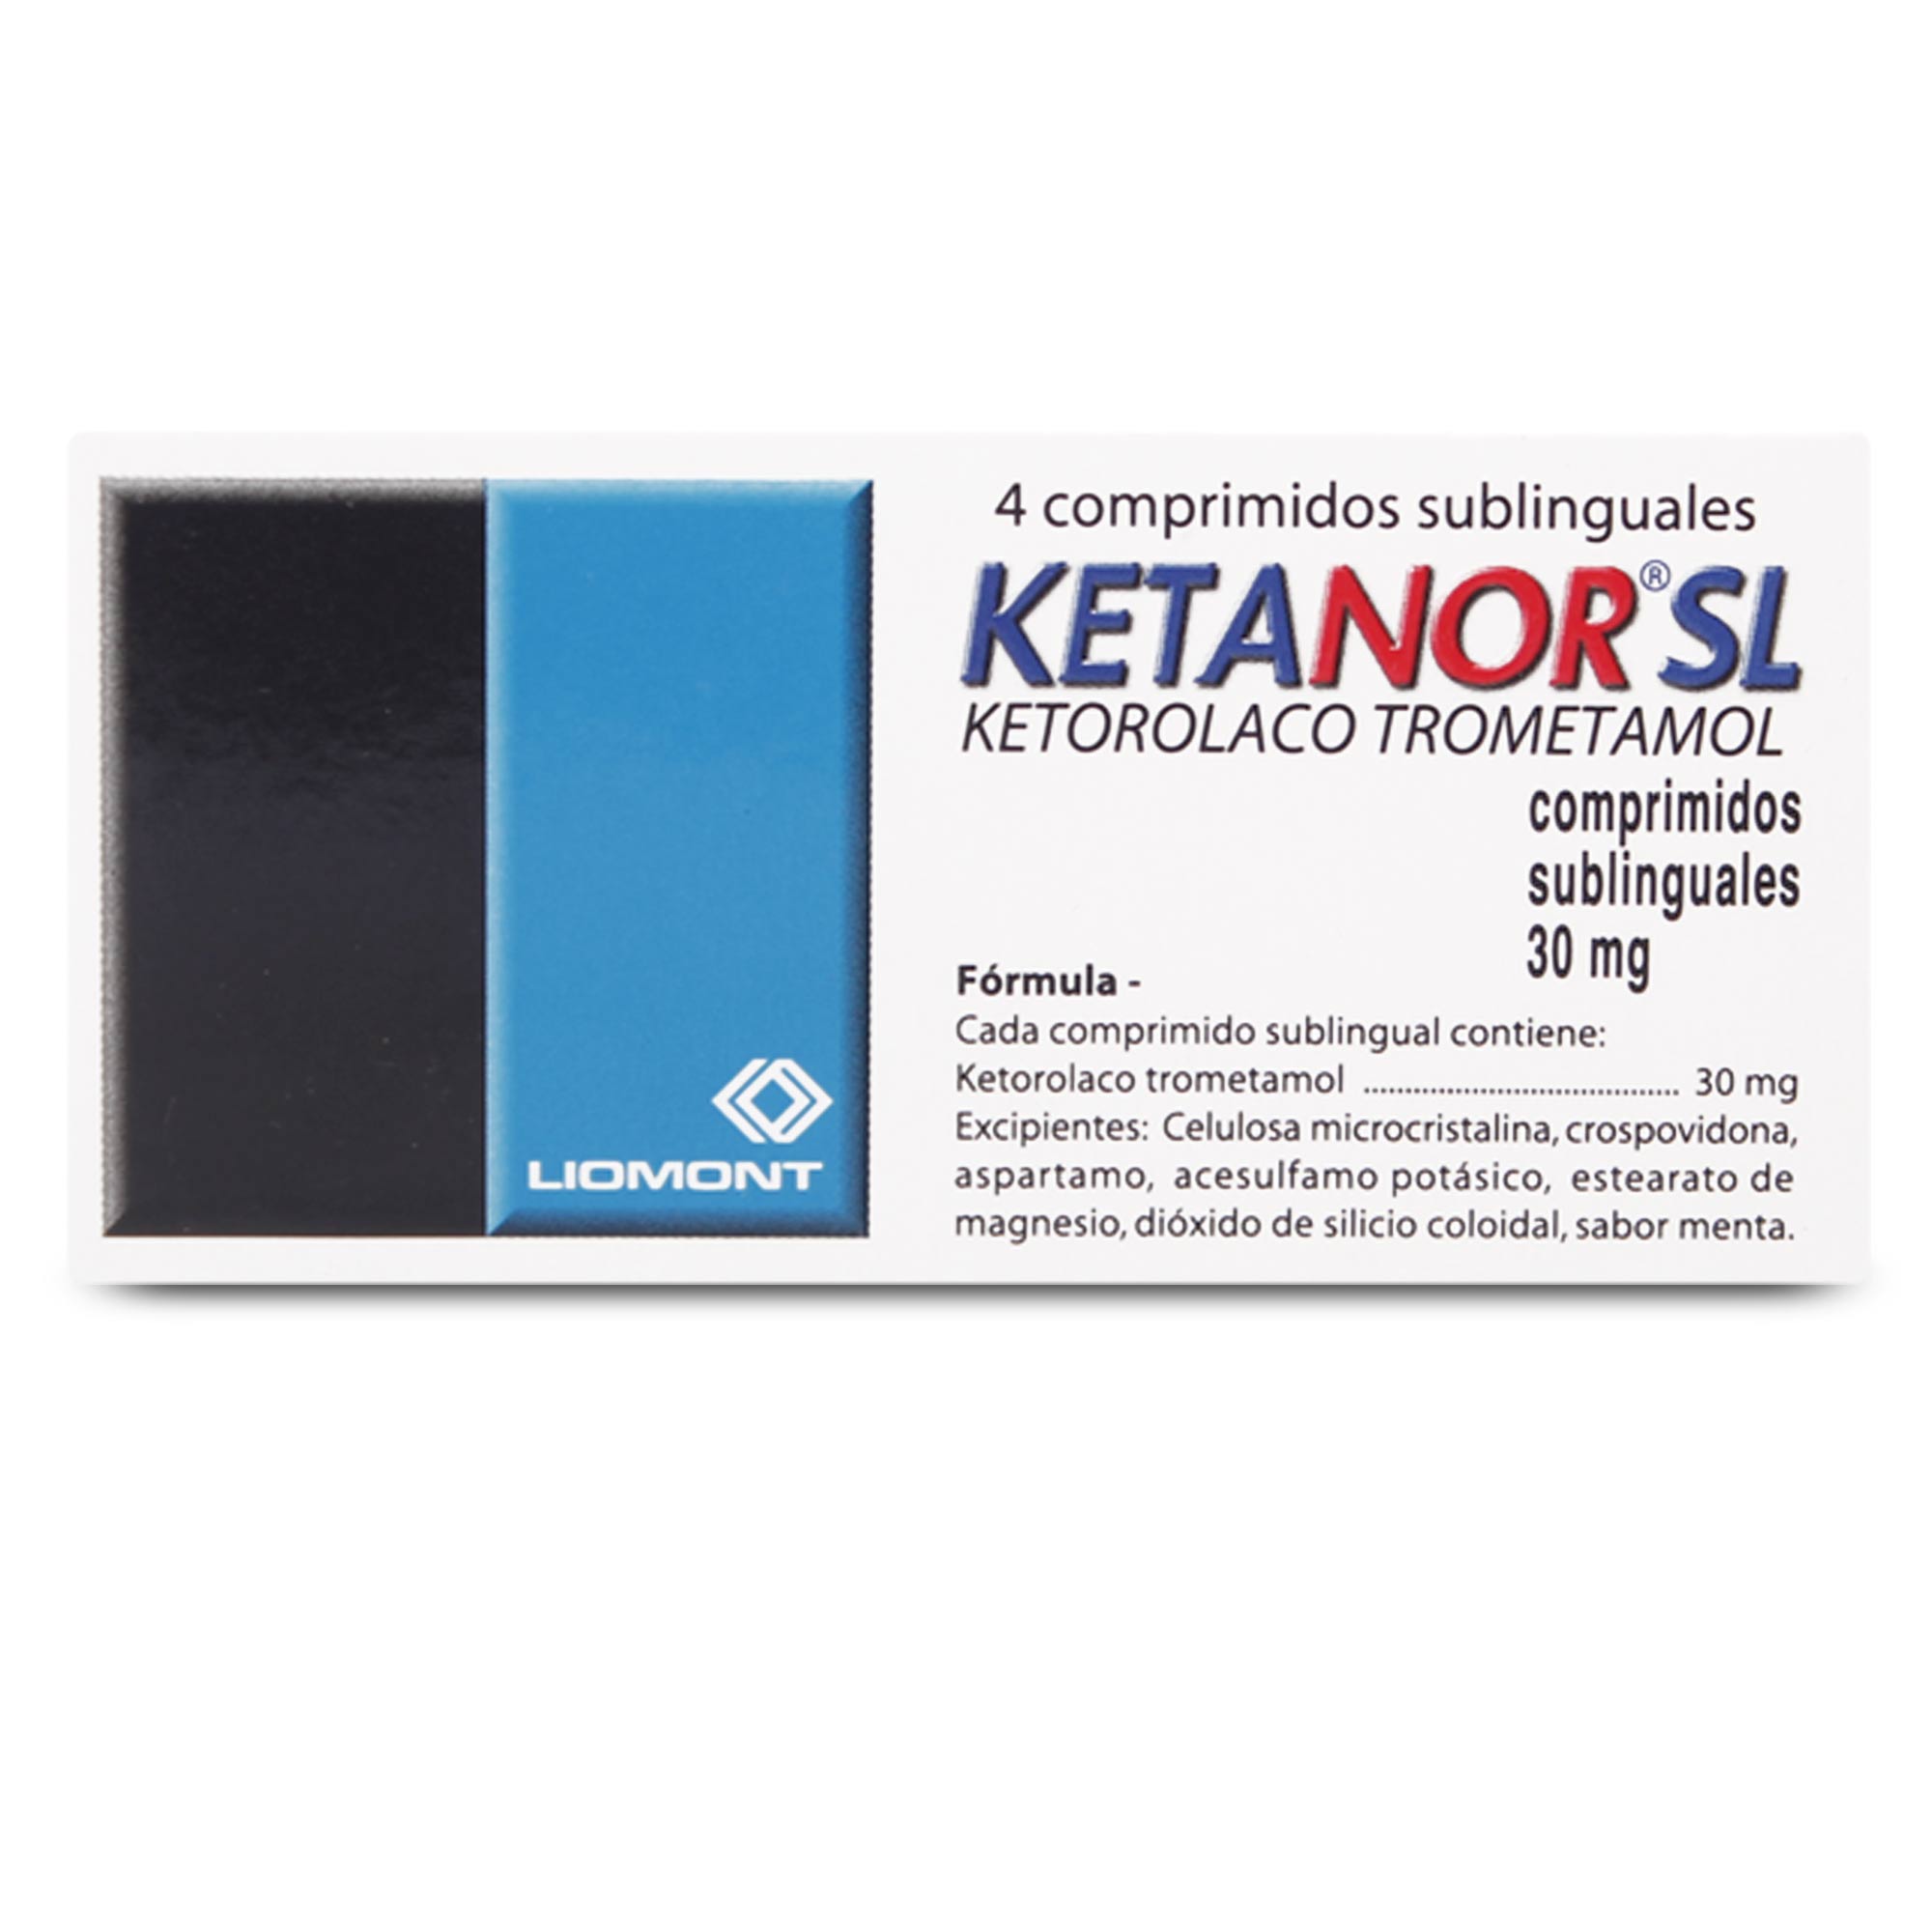 Ketanor-Sl Ketorolaco 30 mg 4 Comprimidos Sub-Lingual | Farmacias Cruz Verde